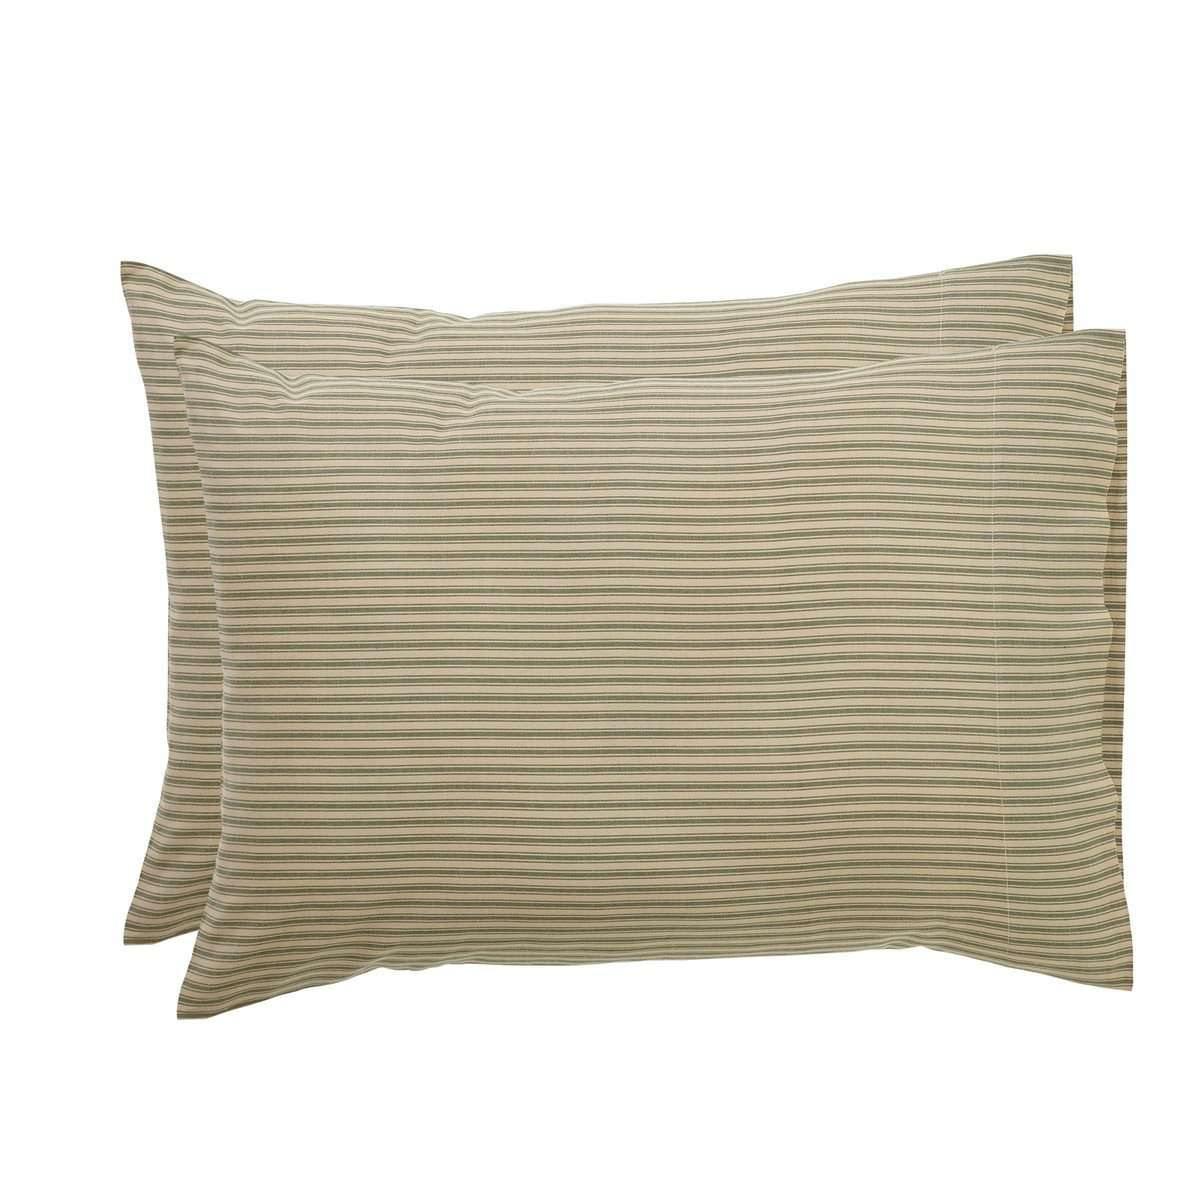 Prairie Winds Green Ticking Stripe Standard Pillow Case Set of 2 21x30 VHC Brands - The Fox Decor